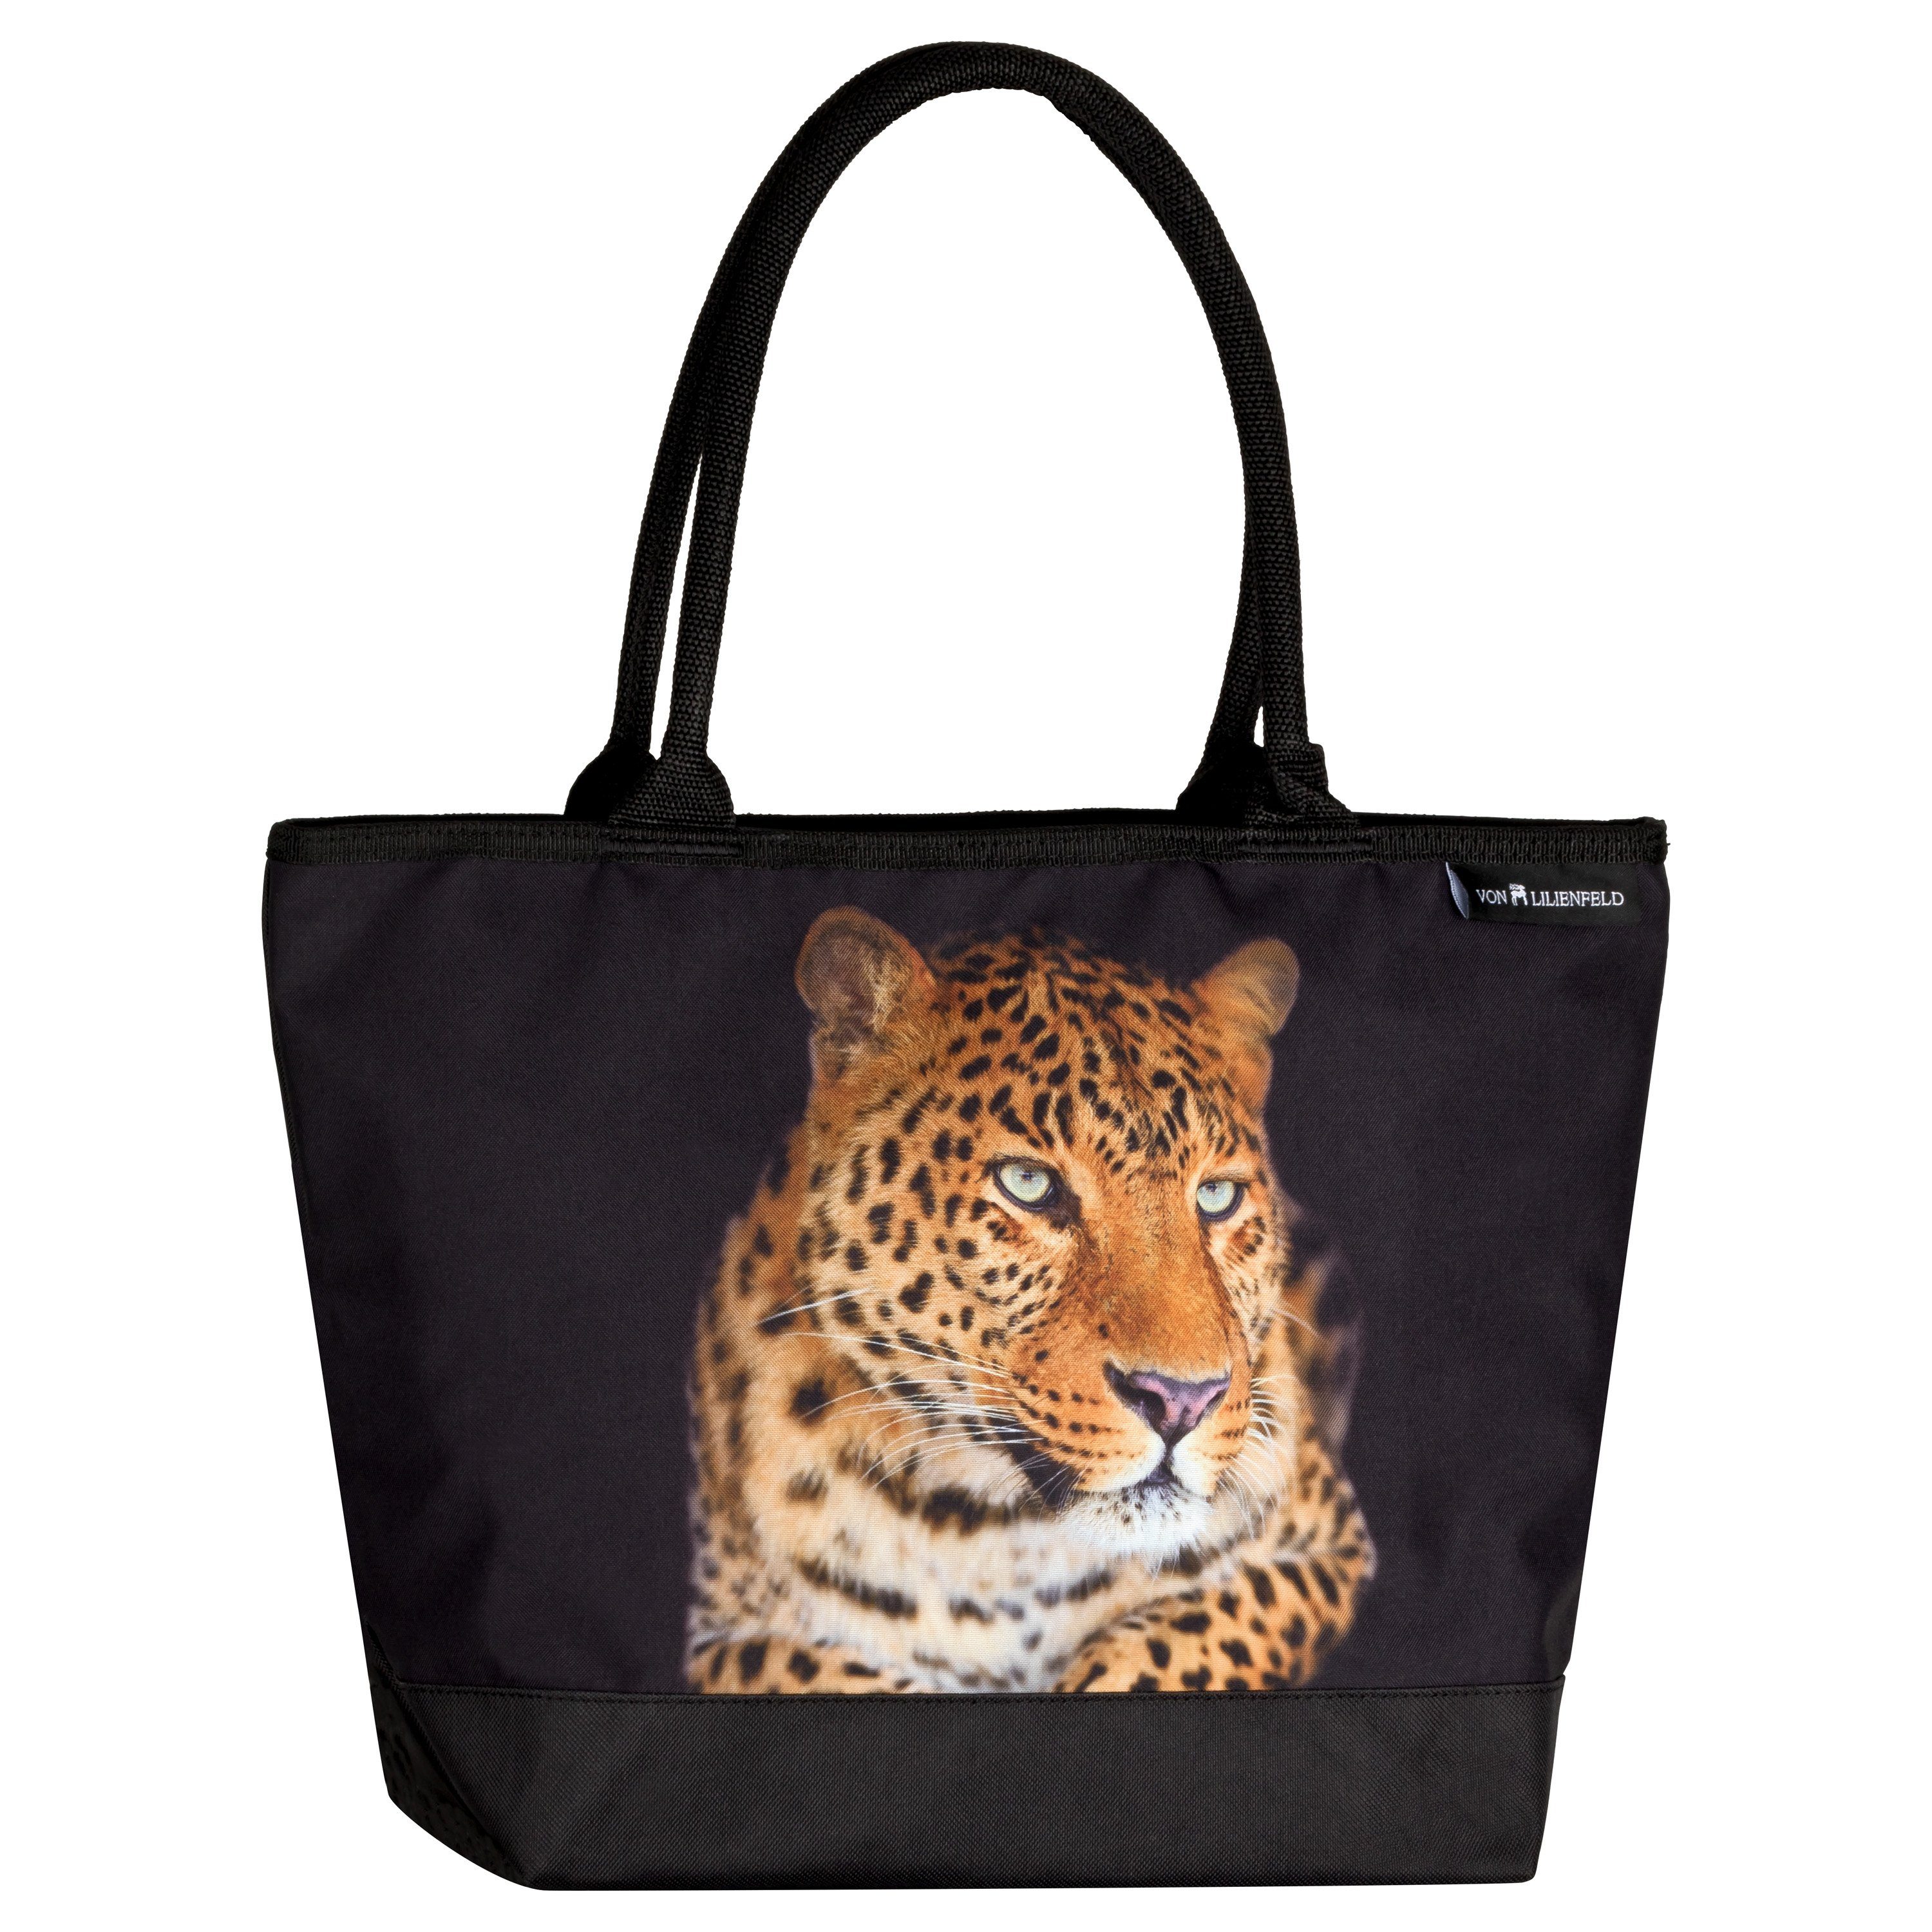 von Lilienfeld Handtasche Tasche mit Motiv Leopard Raubkatze Shopper